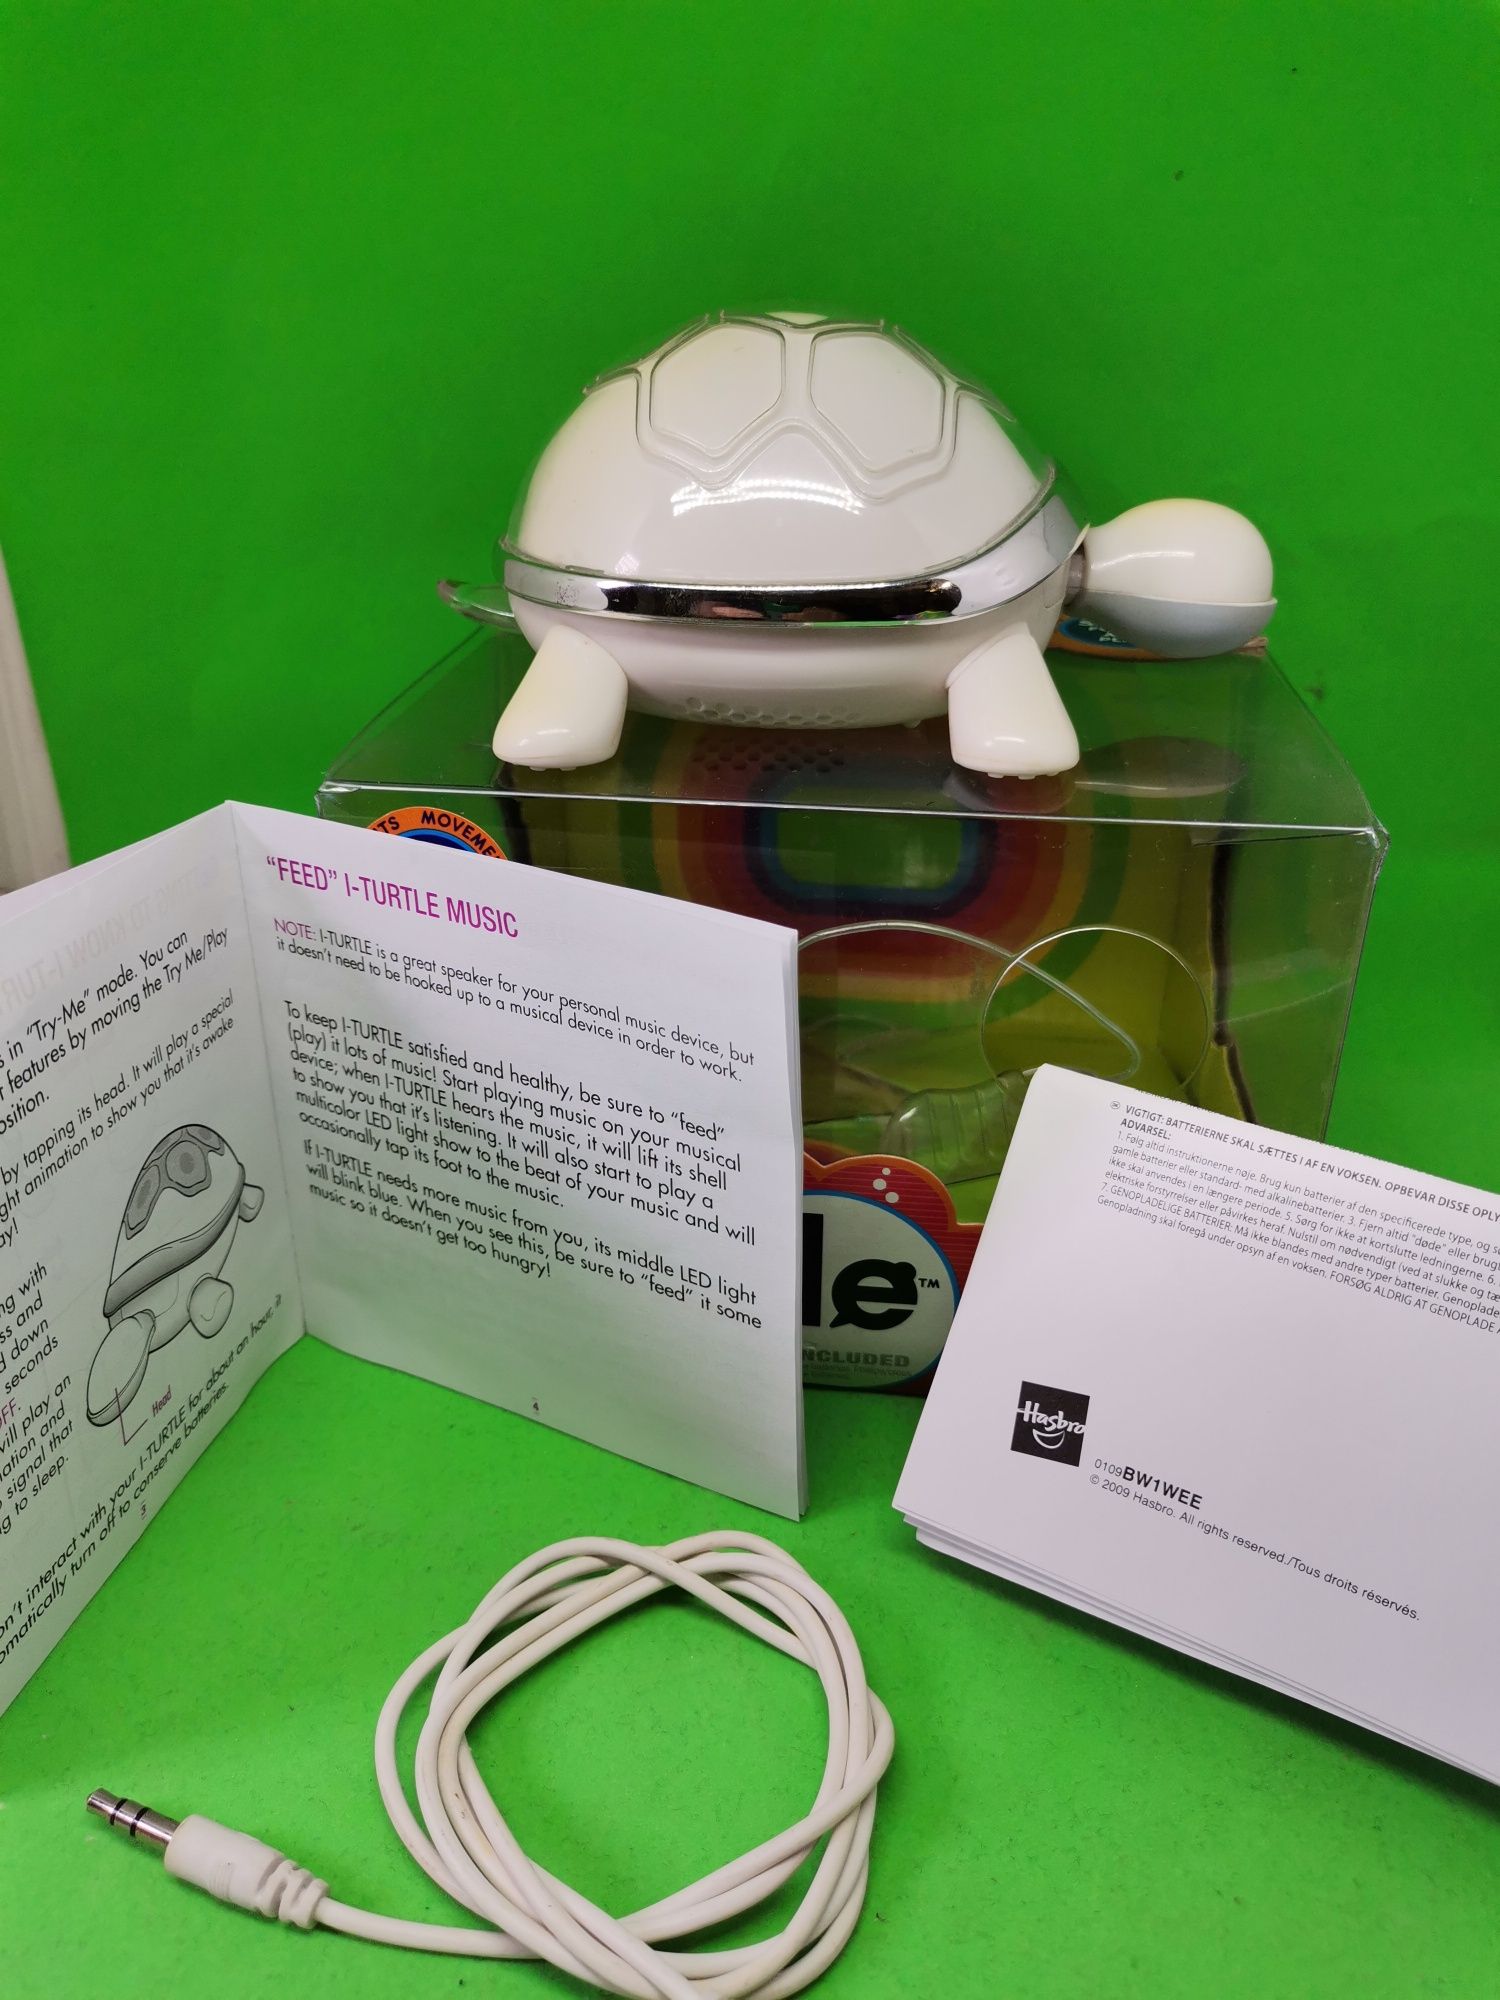 I-TURTLE. Țestoasă interactivă compatibilă oricărui smart Phone.